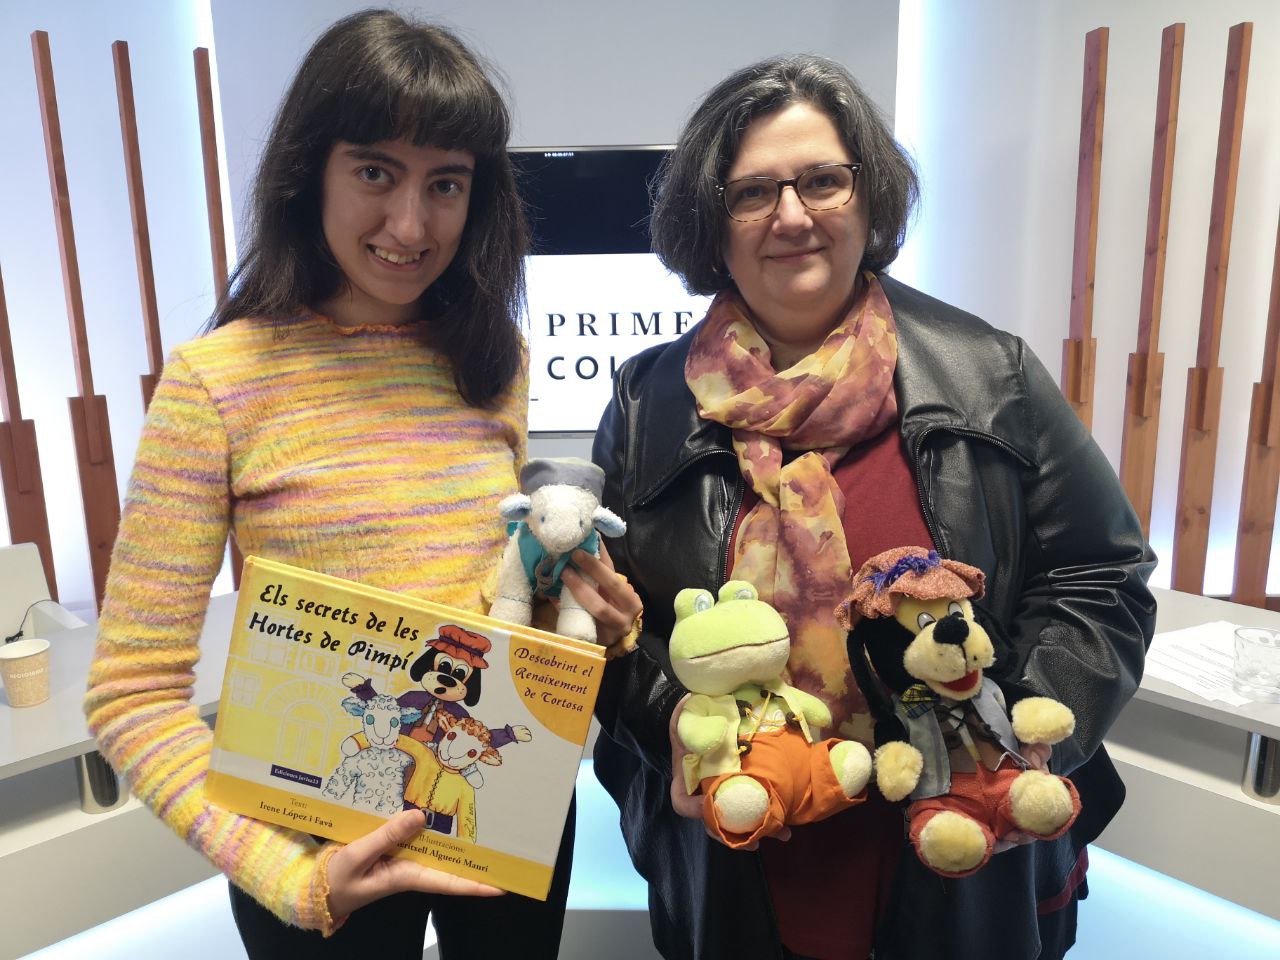 Irene López i Meritxell Algueró, presentant el llibre Els Secrets de les Hortes de Pimpí